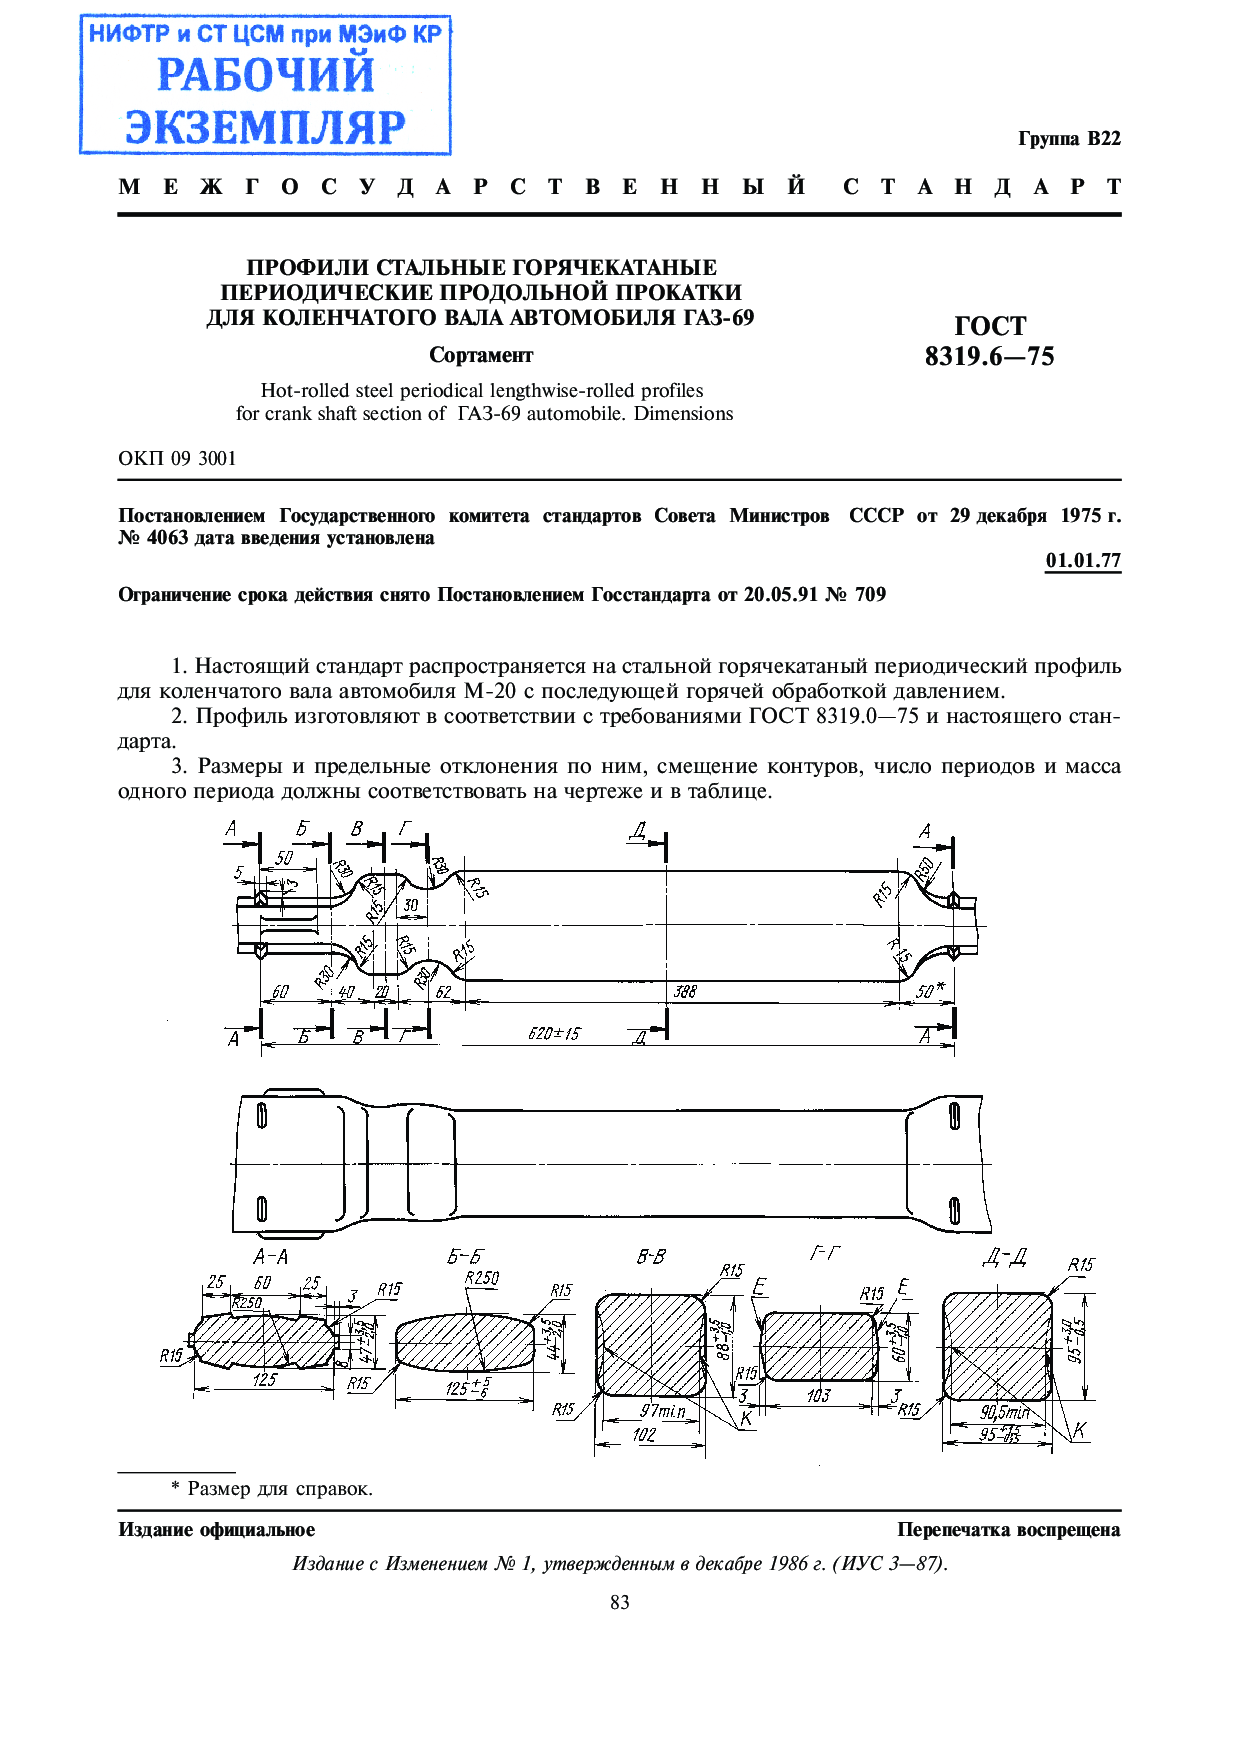 Профили стальные горячекатаные периодические продольной прокатки для коленчатого вала автомобиля ГАЗ-69. Сортамент.